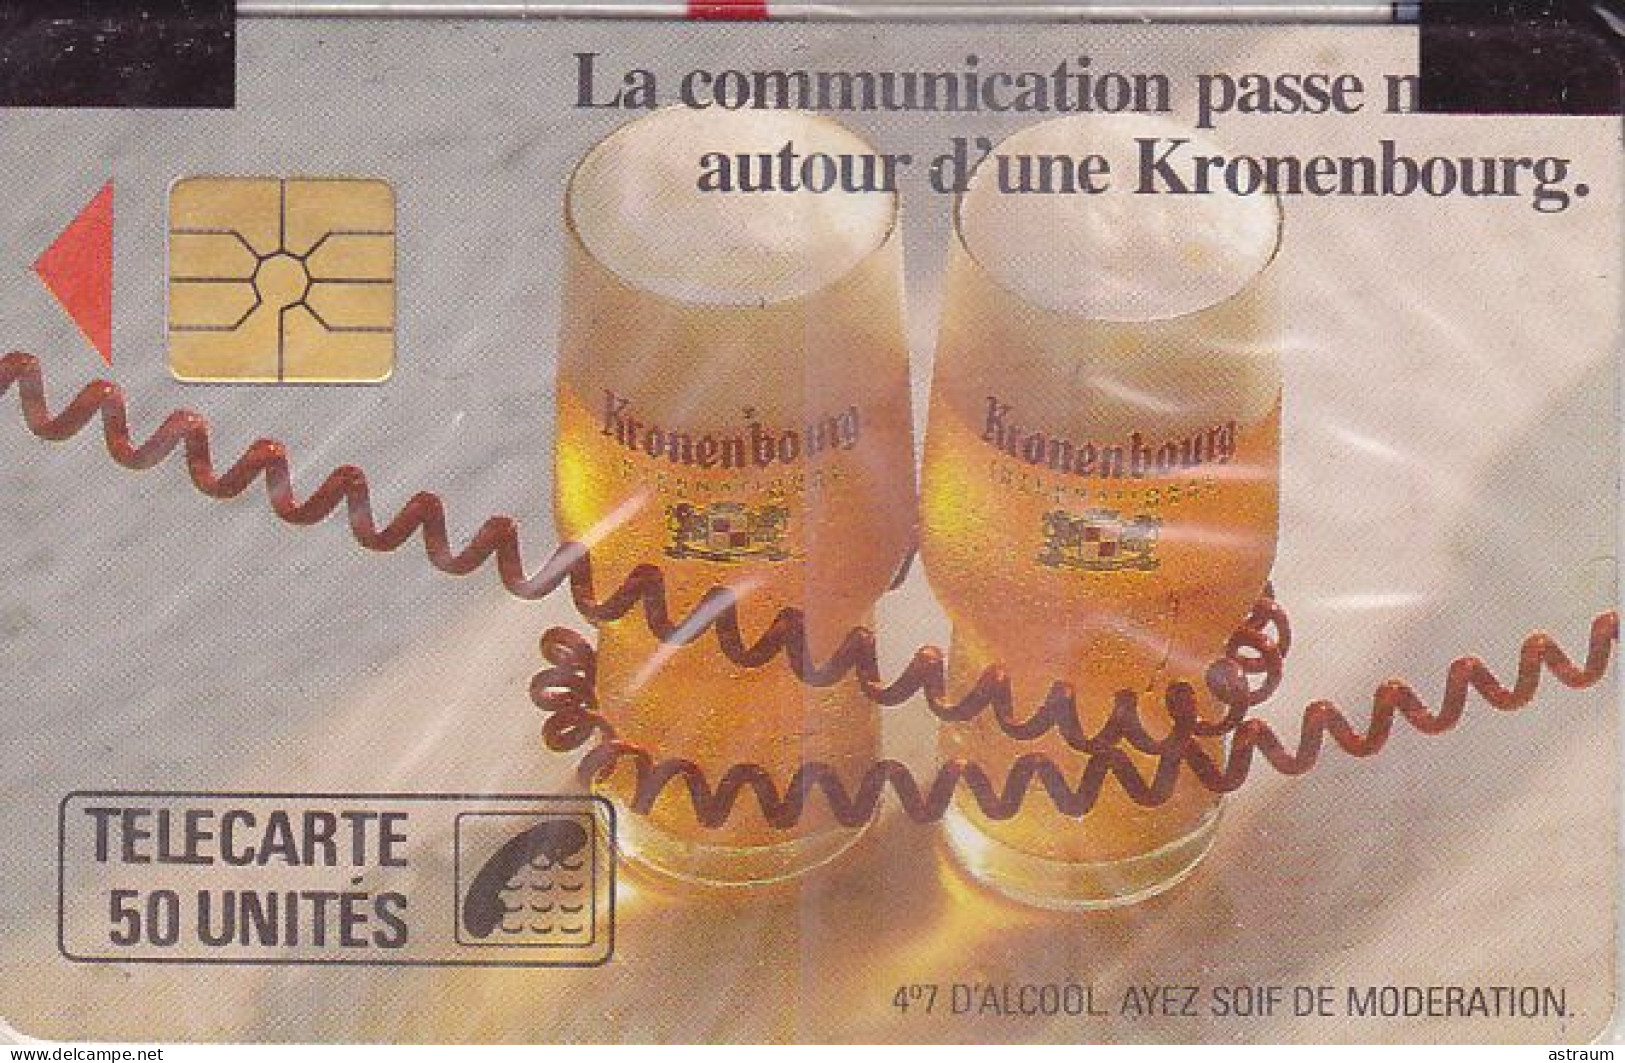 Telecarte Publique F90 NSB - Kronenbourg Petite Fleche - 50 U - Gem - 1989 - 1989